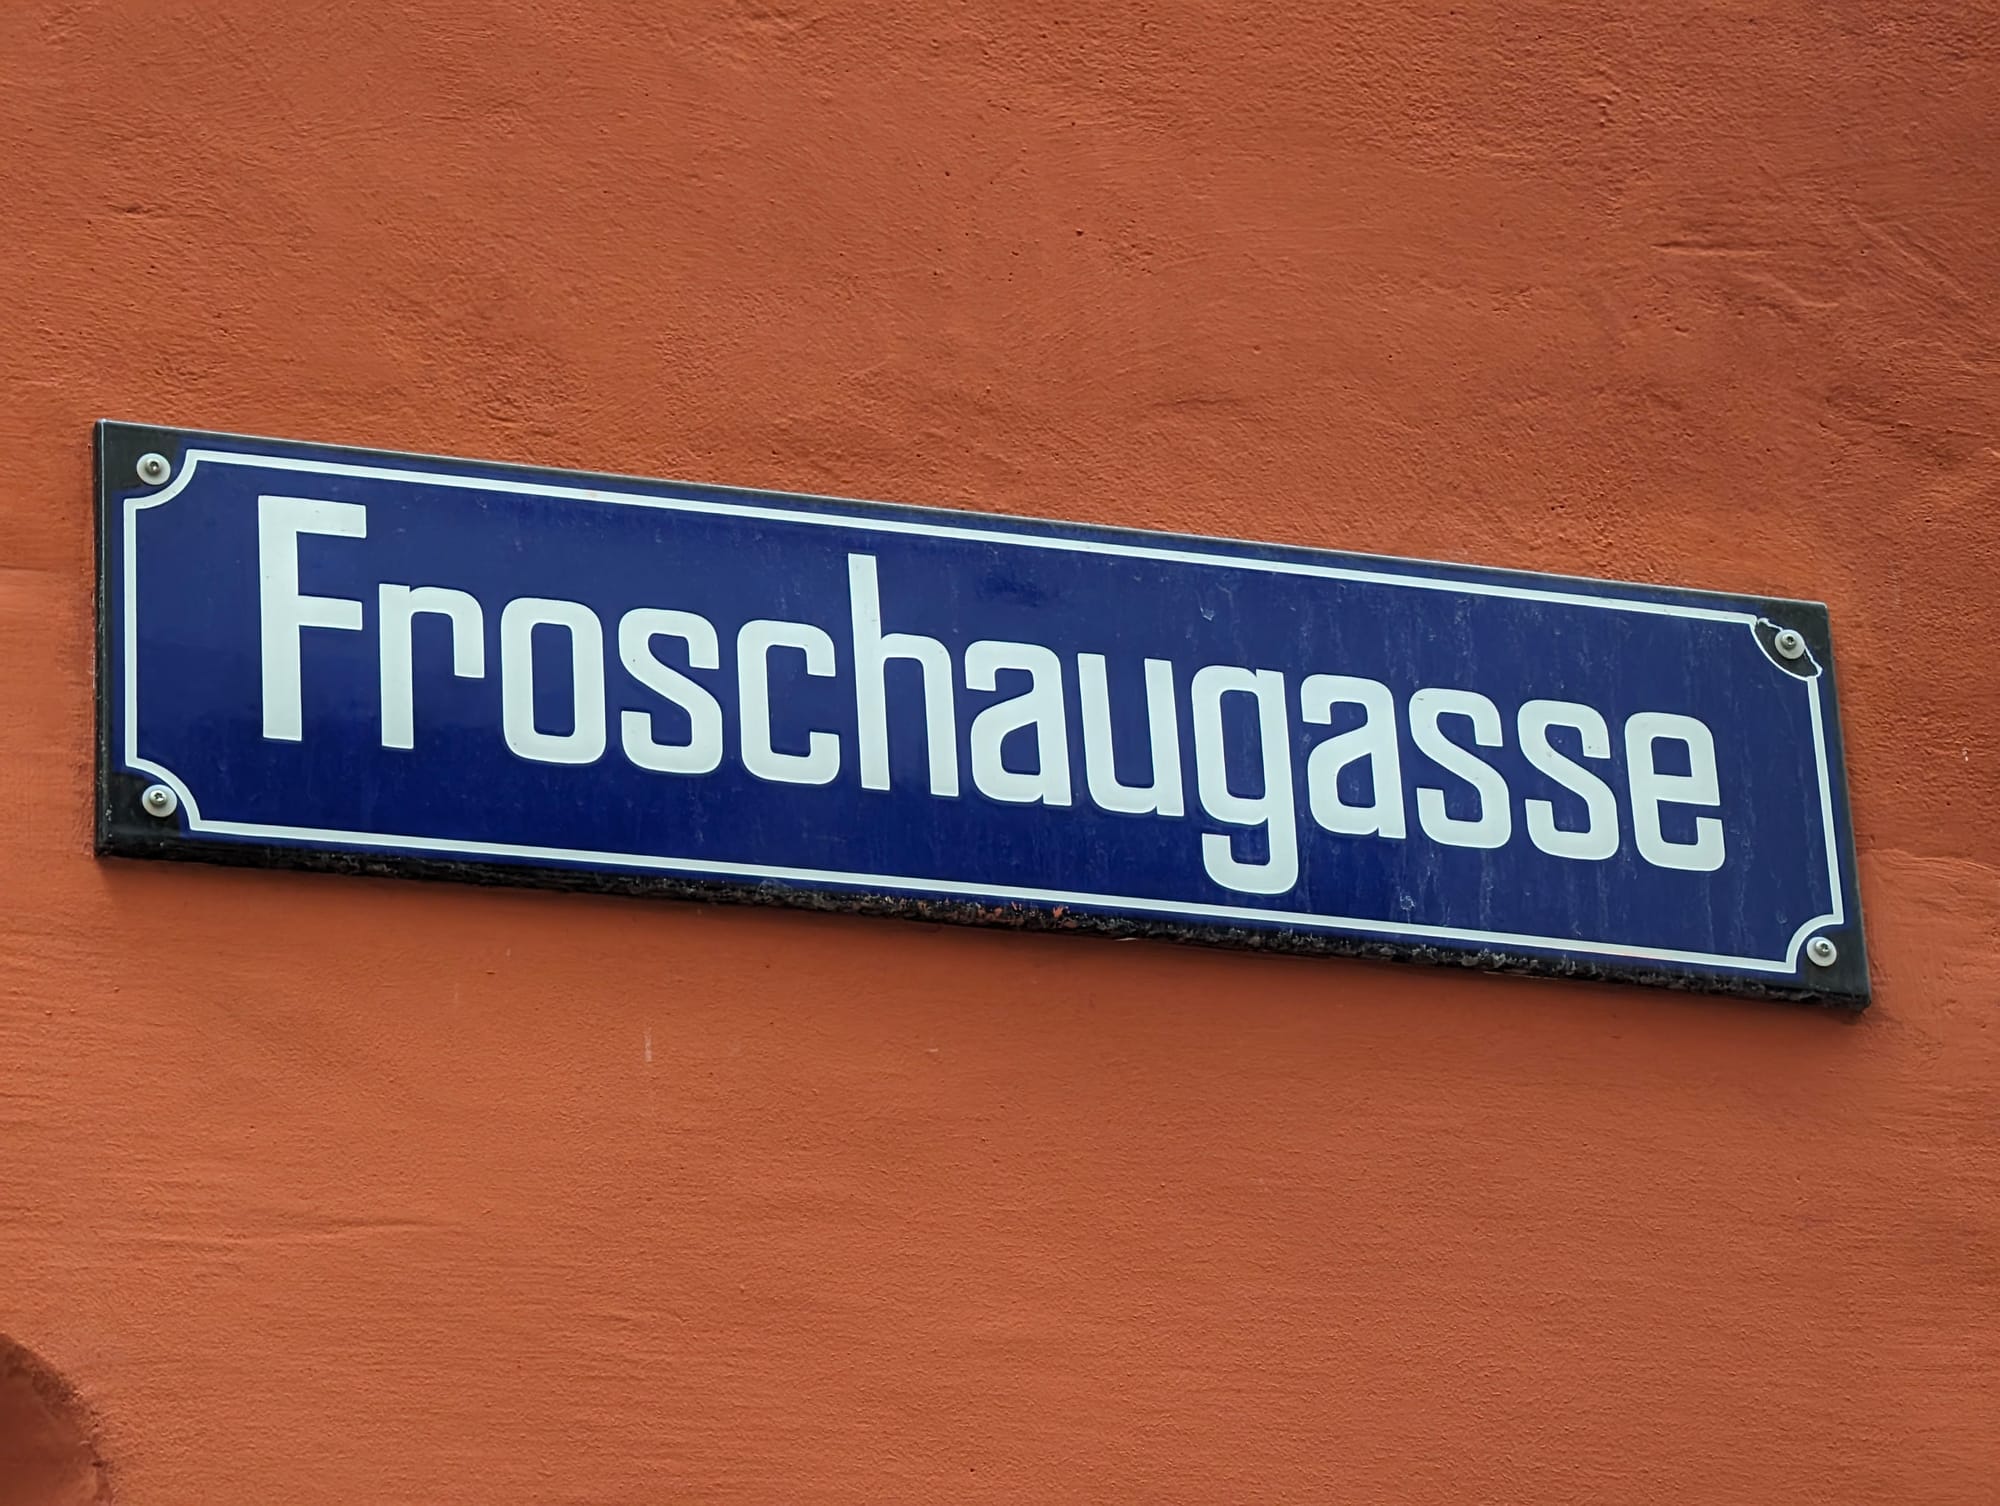 The History of the Froschauerbrunnen in Zürich, Switzerland